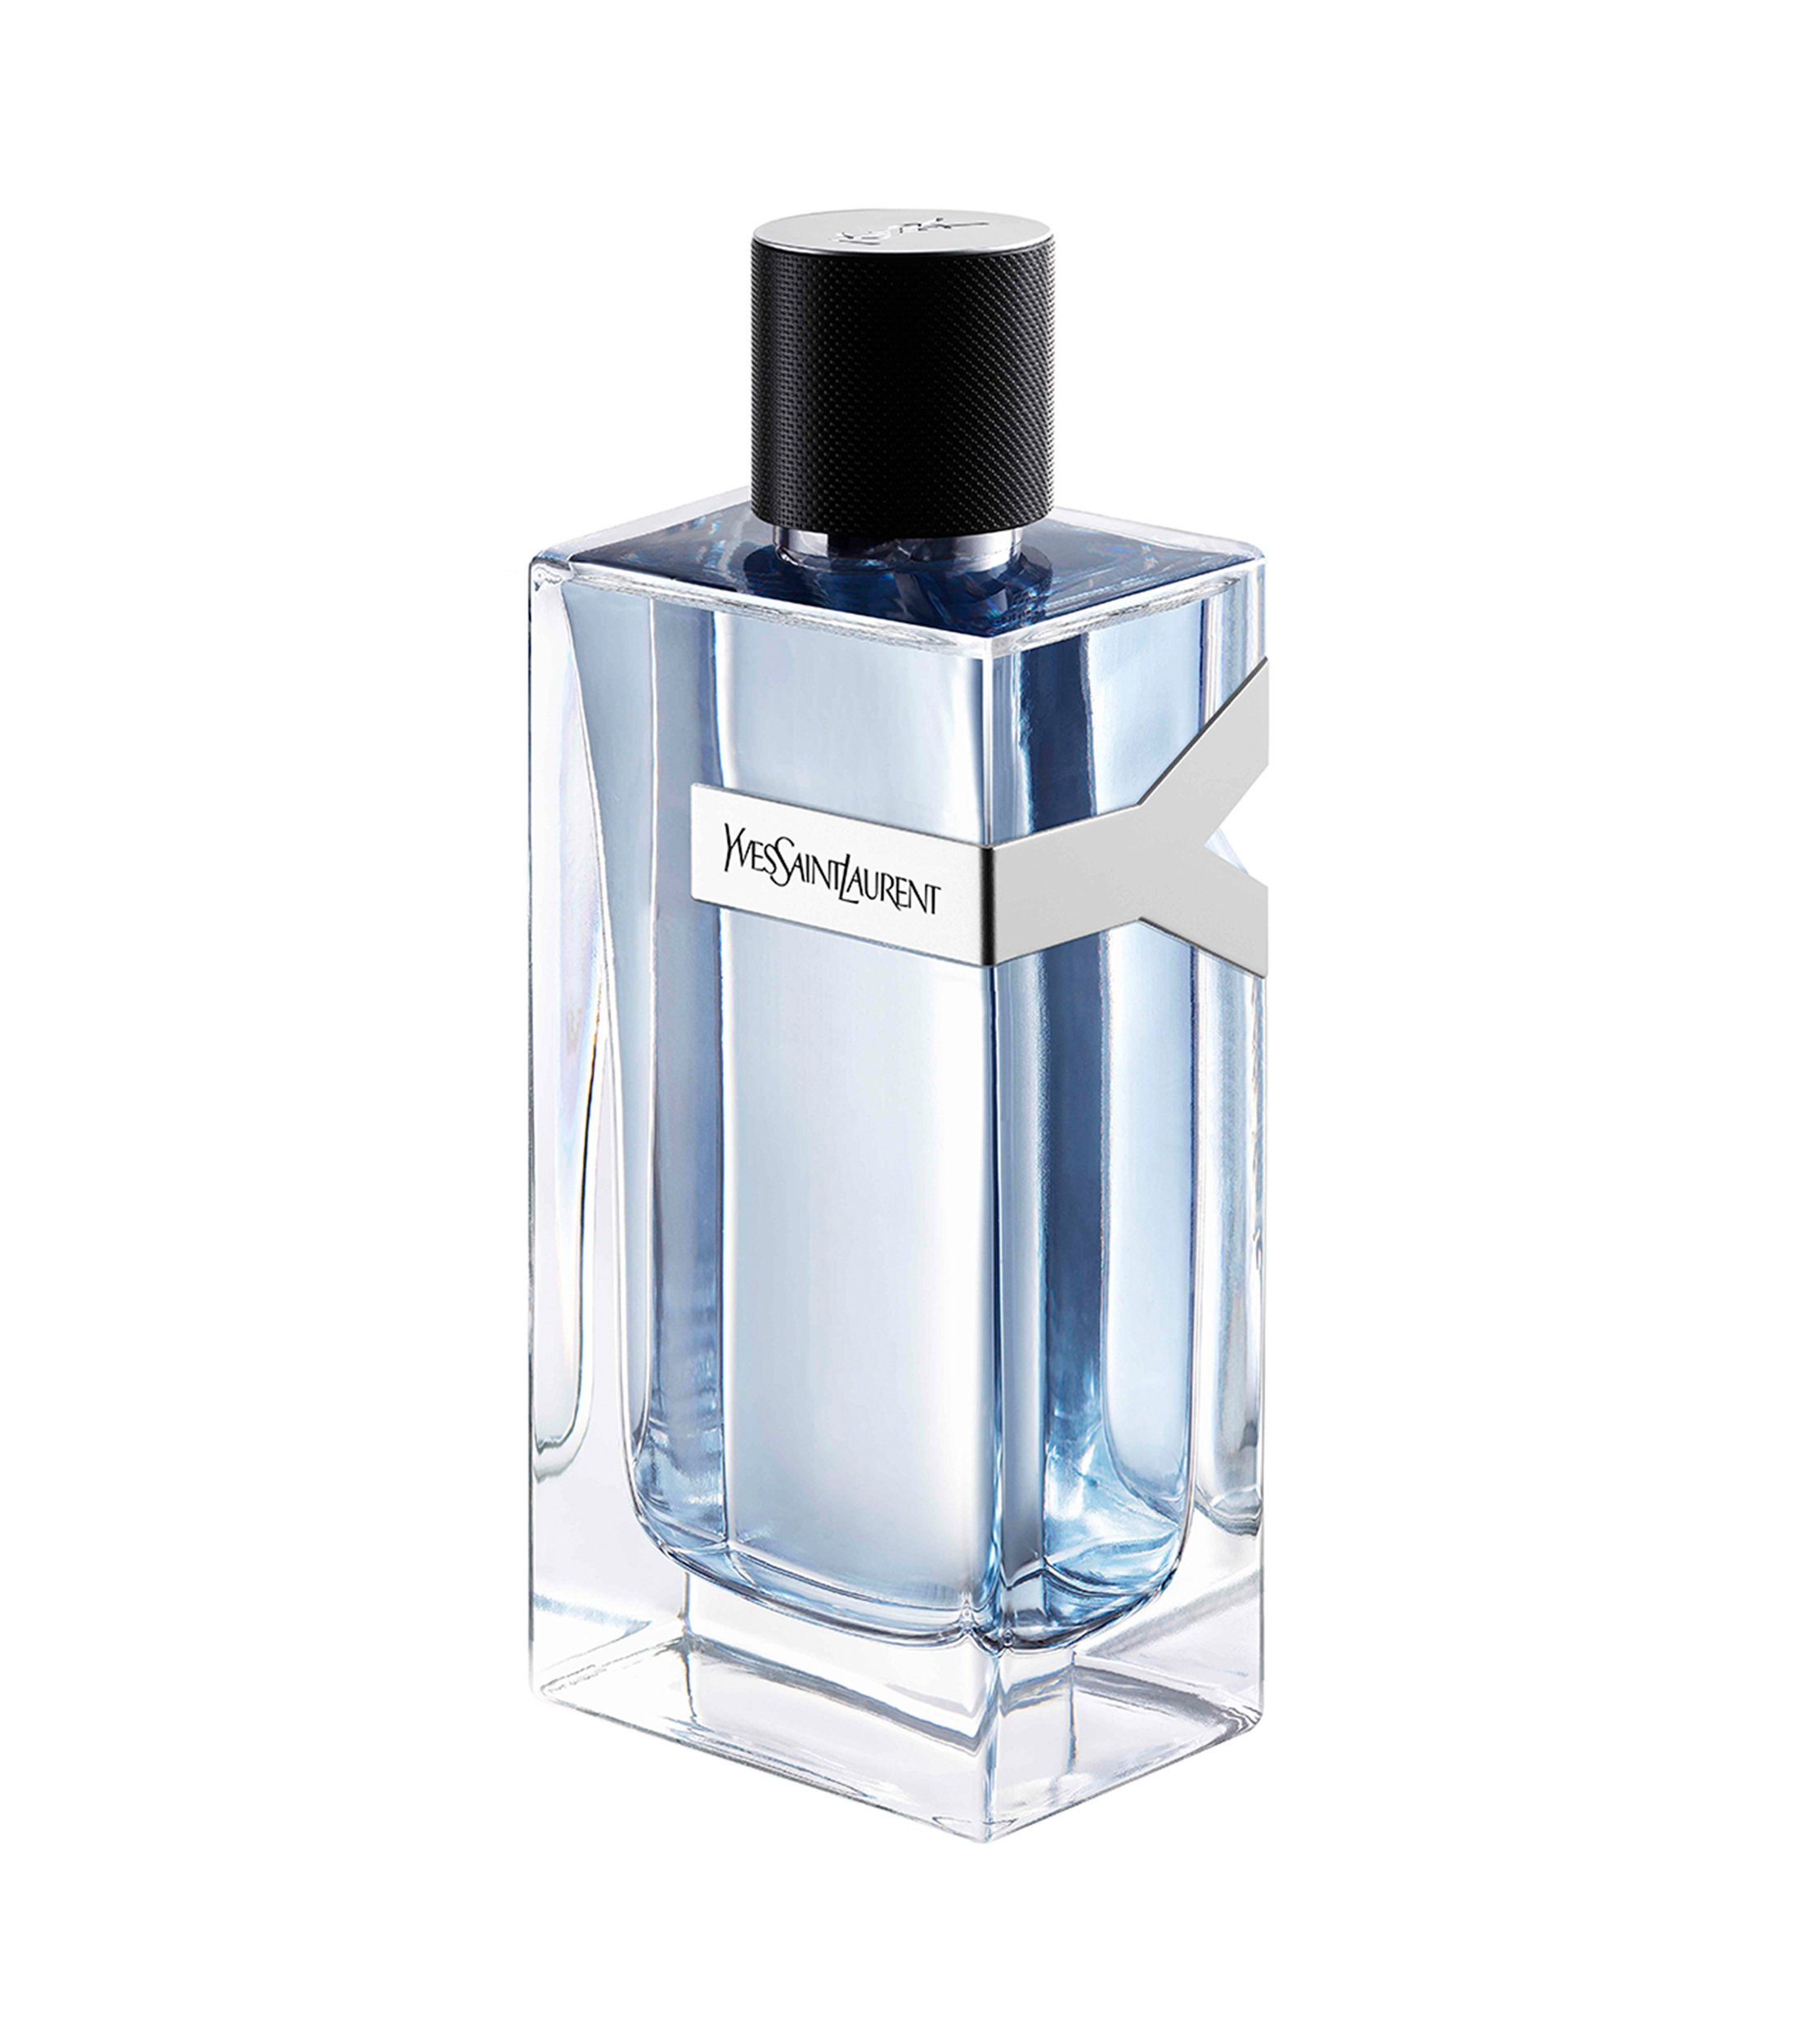 Yves Saint Laurent Perfume Y Eau de Toilette, 200 ml Hombre - El